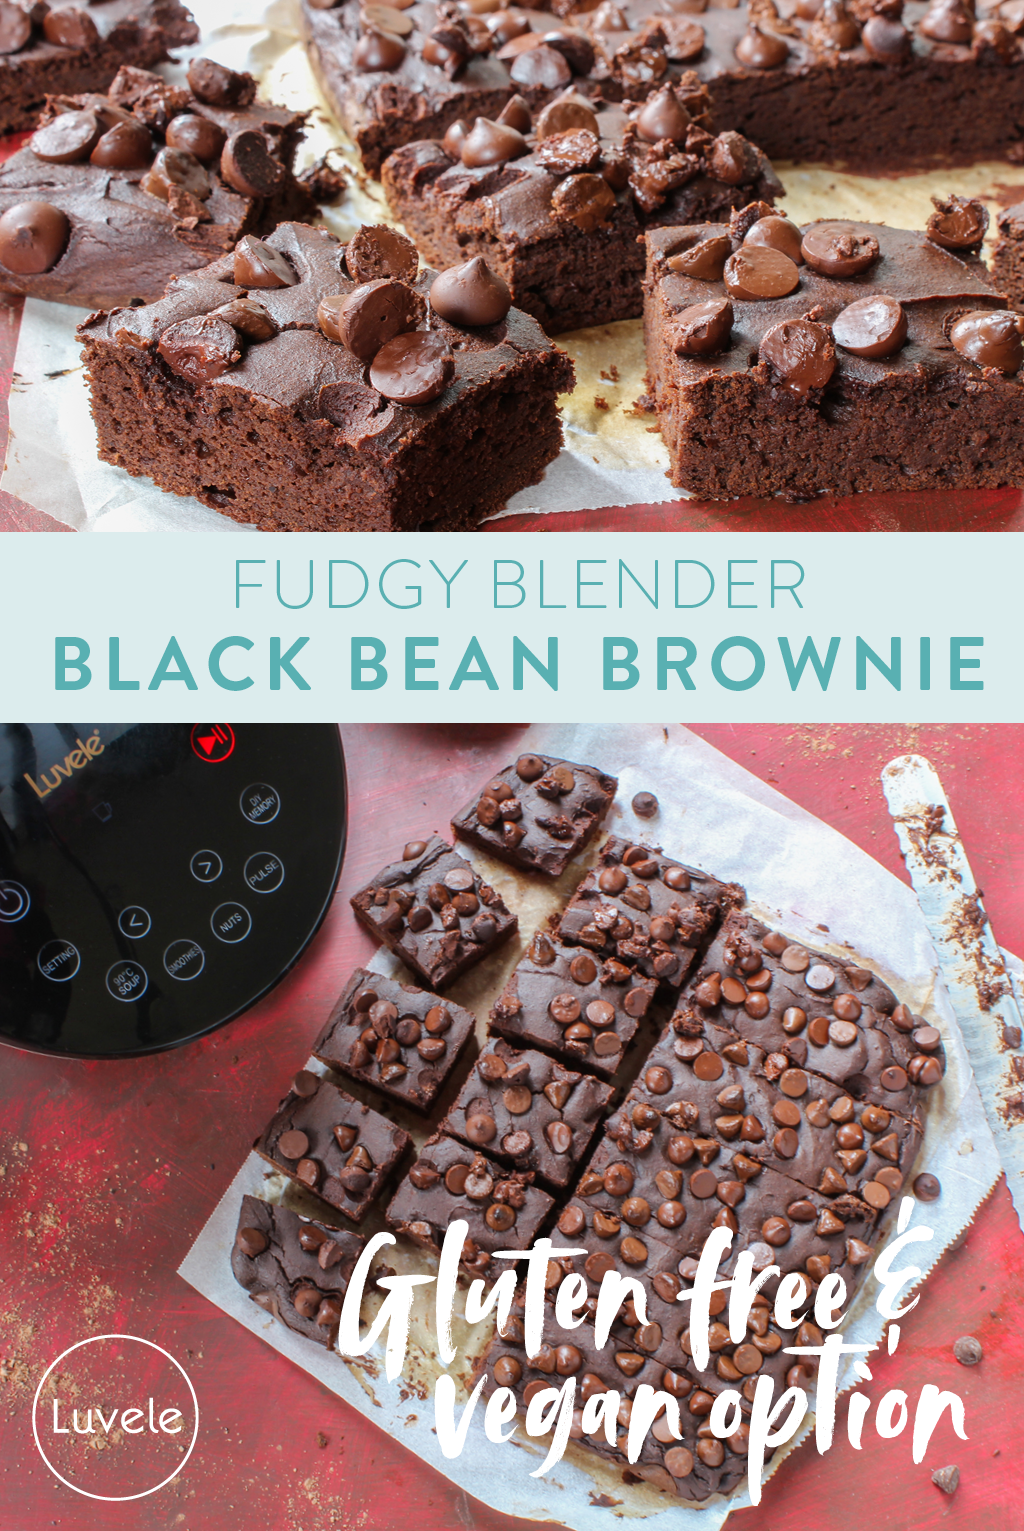 Black bean brownie